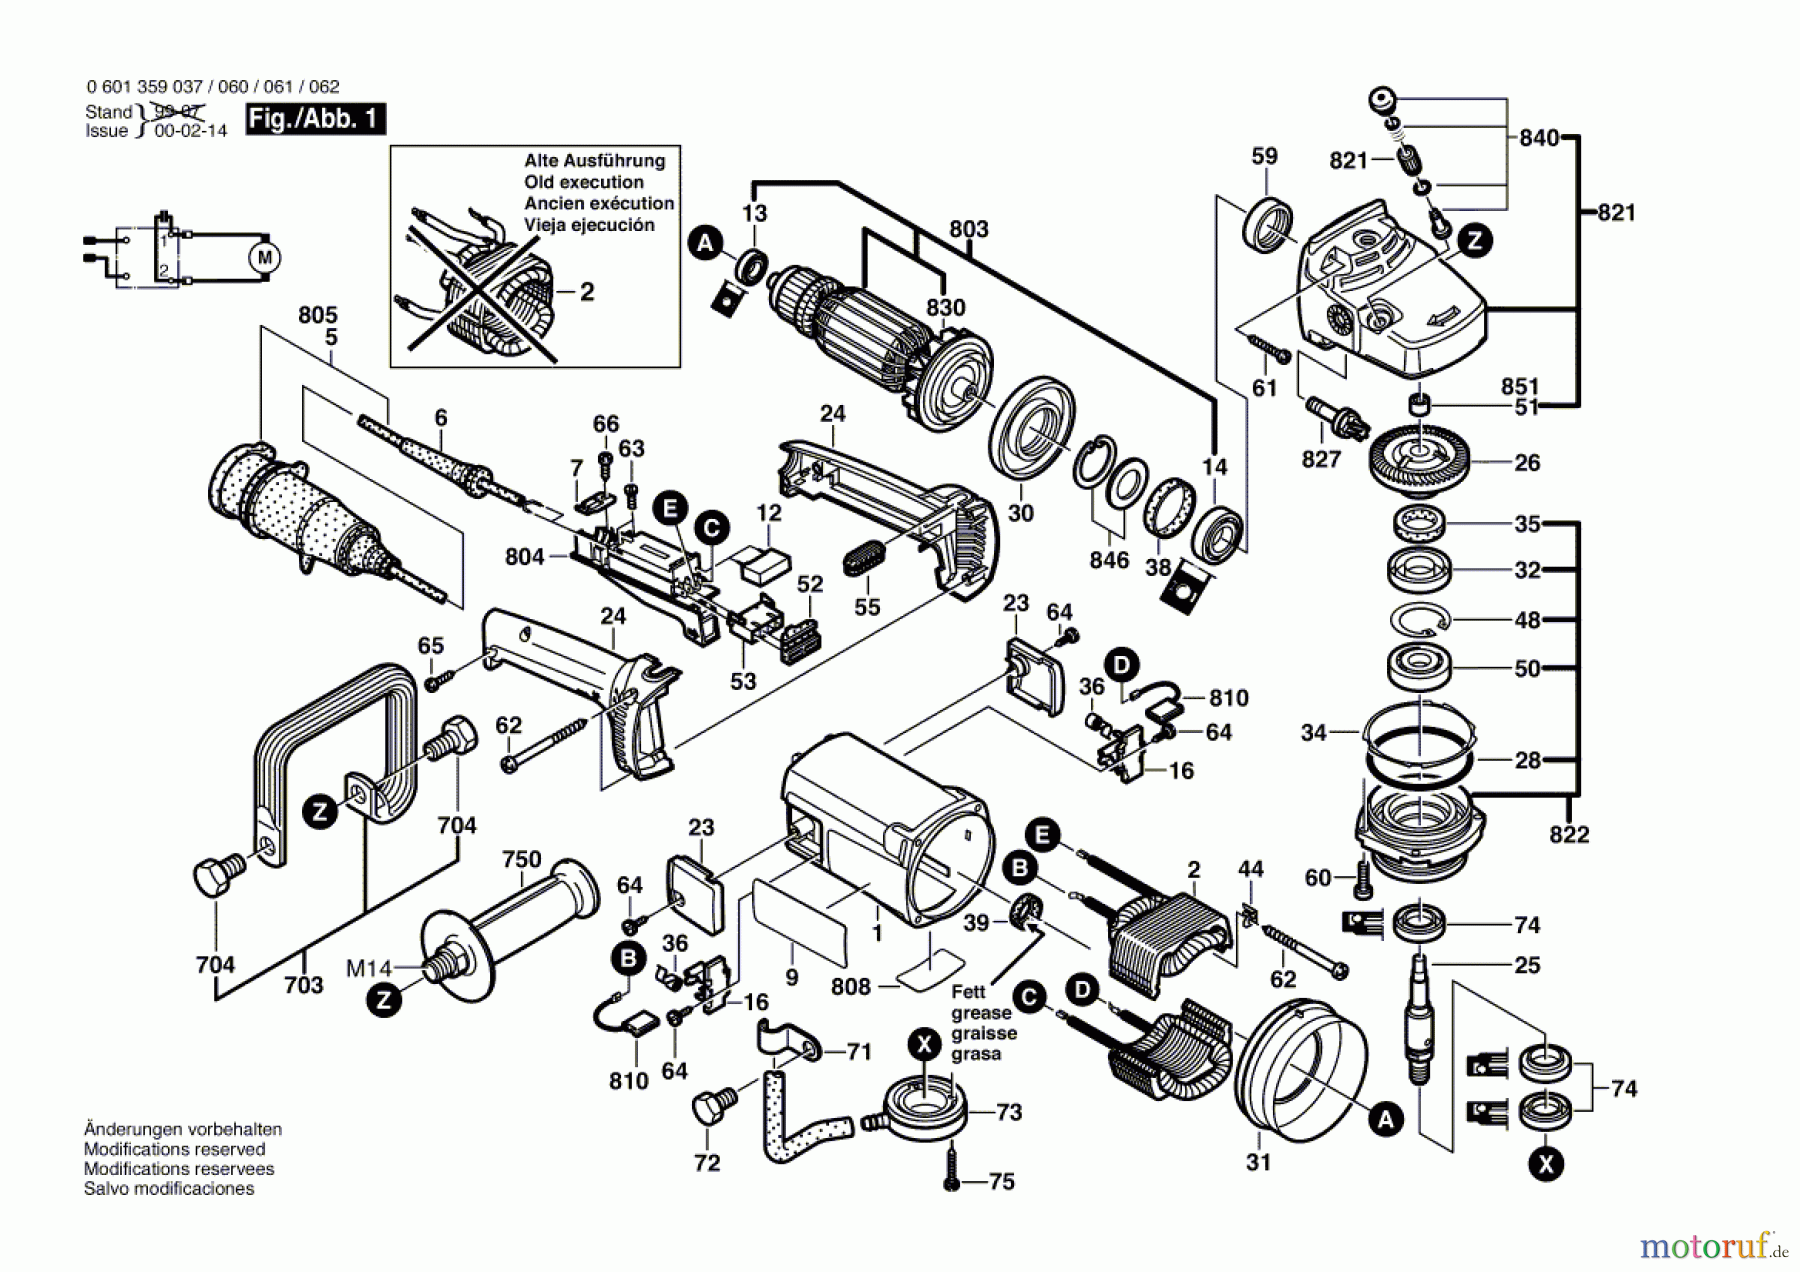  Bosch Werkzeug Nassschleifer GNS 14 Seite 1